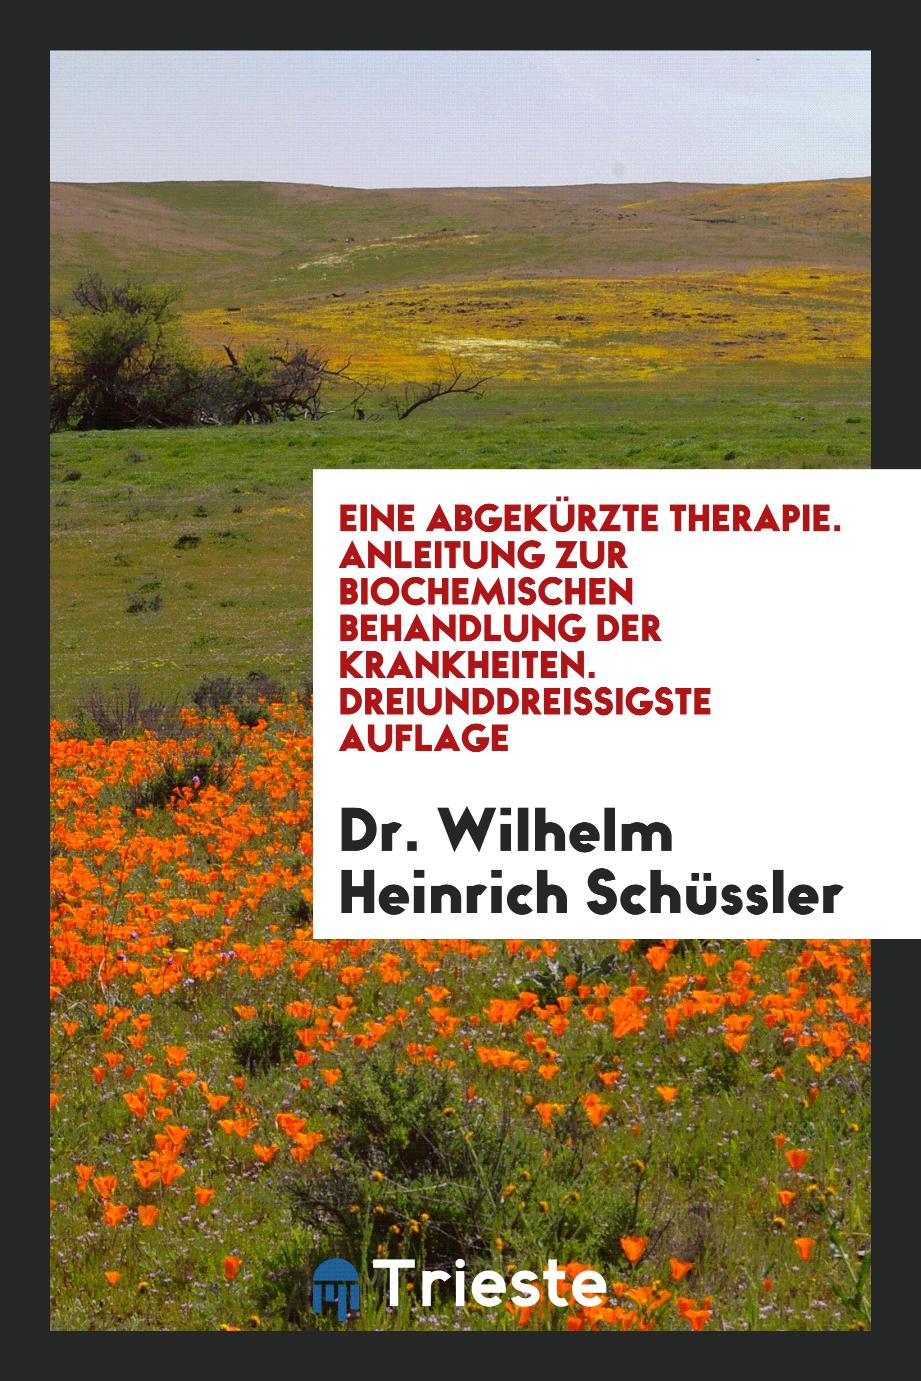 Eine Abgekürzte Therapie. Anleitung zur Biochemischen Behandlung der Krankheiten. Dreiunddreißigste Auflage